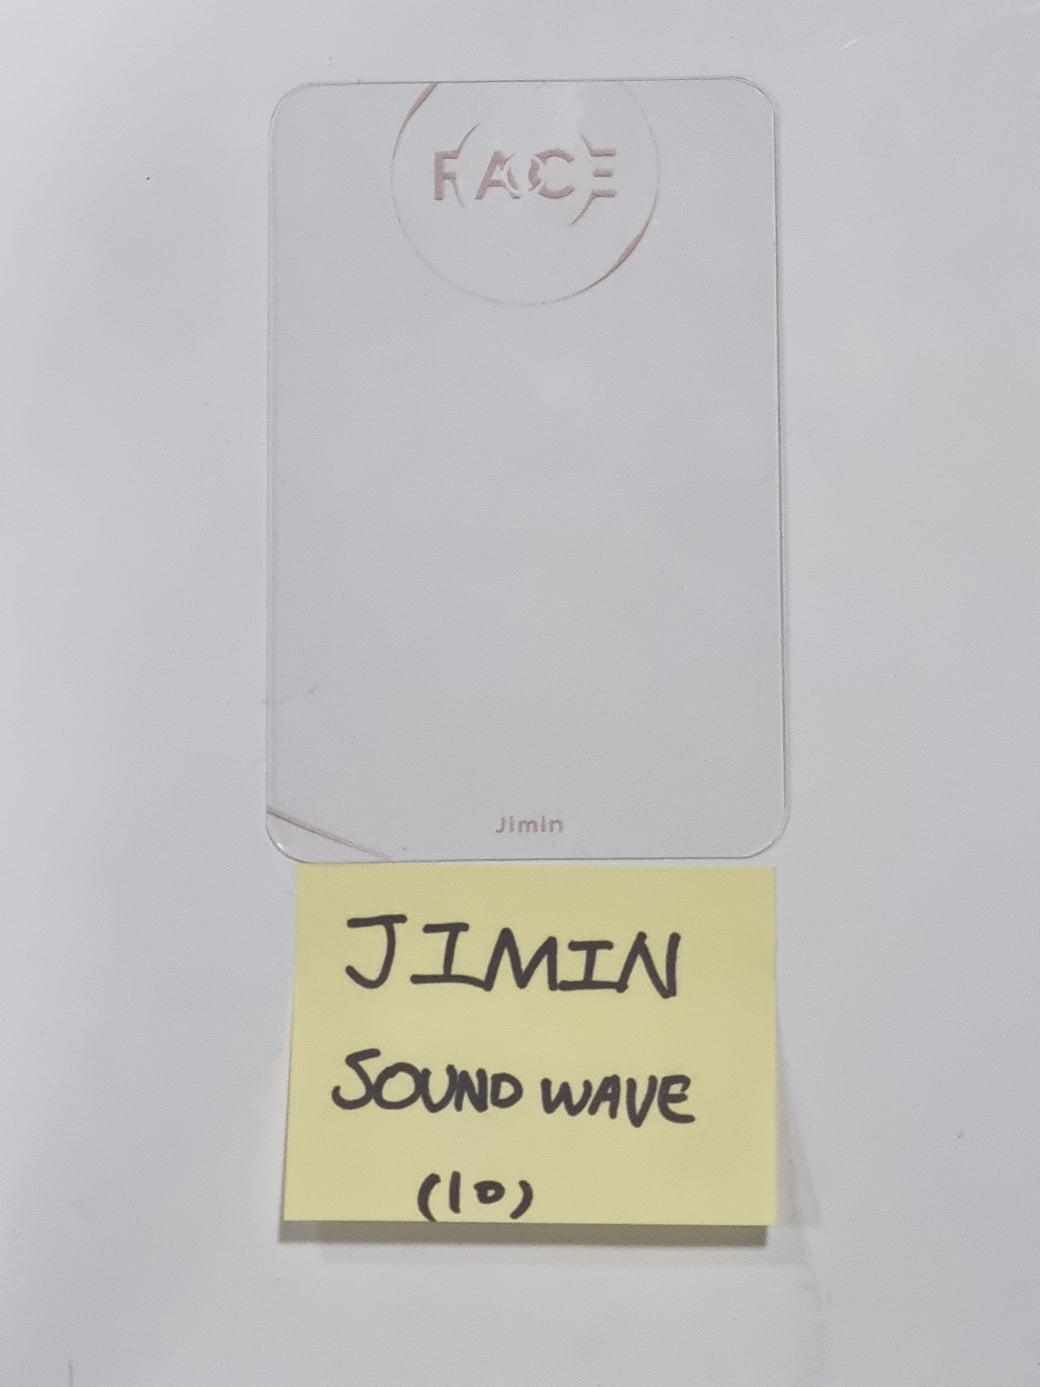 ジミン (BTS) 「FACE」 - サウンドウェーブ プレオーダー特典透明 PVC フォトカード